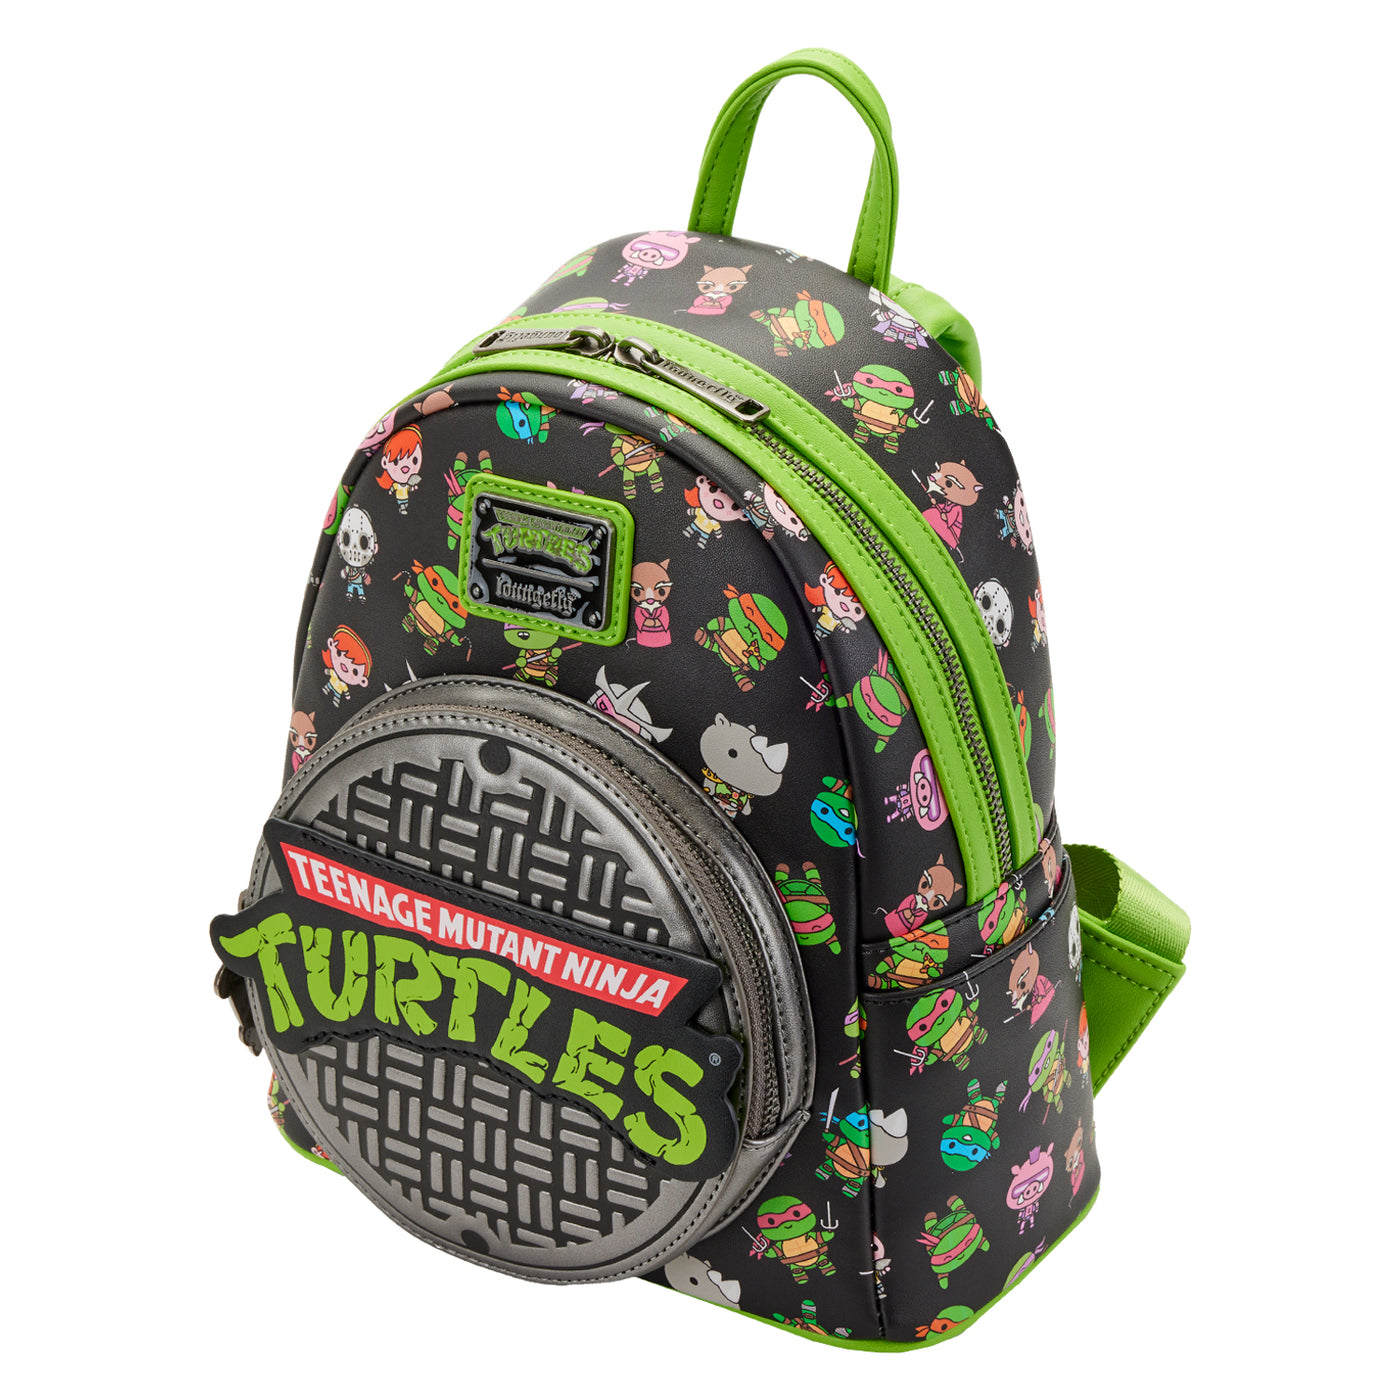 Nickelodeon Teenage Mutant Ninja Turtles Mini Backpack